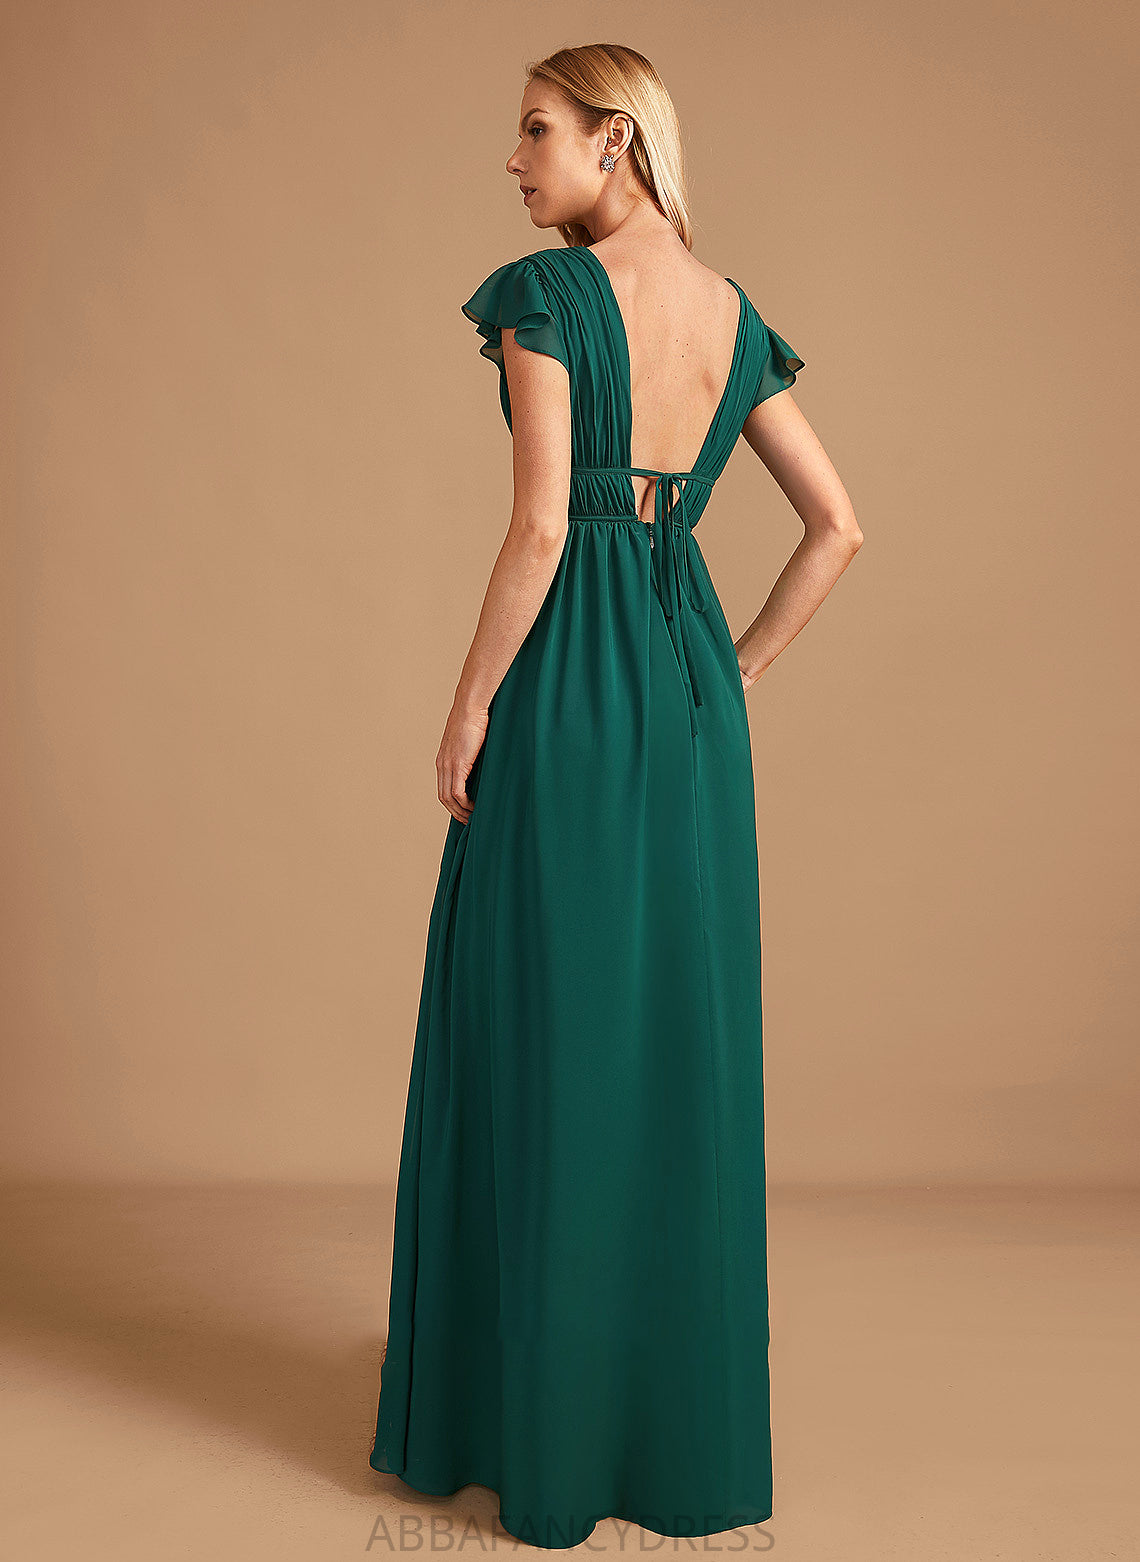 A-Line Neckline Embellishment Length V-neck SplitFront Fabric Silhouette Floor-Length Linda Natural Waist A-Line/Princess